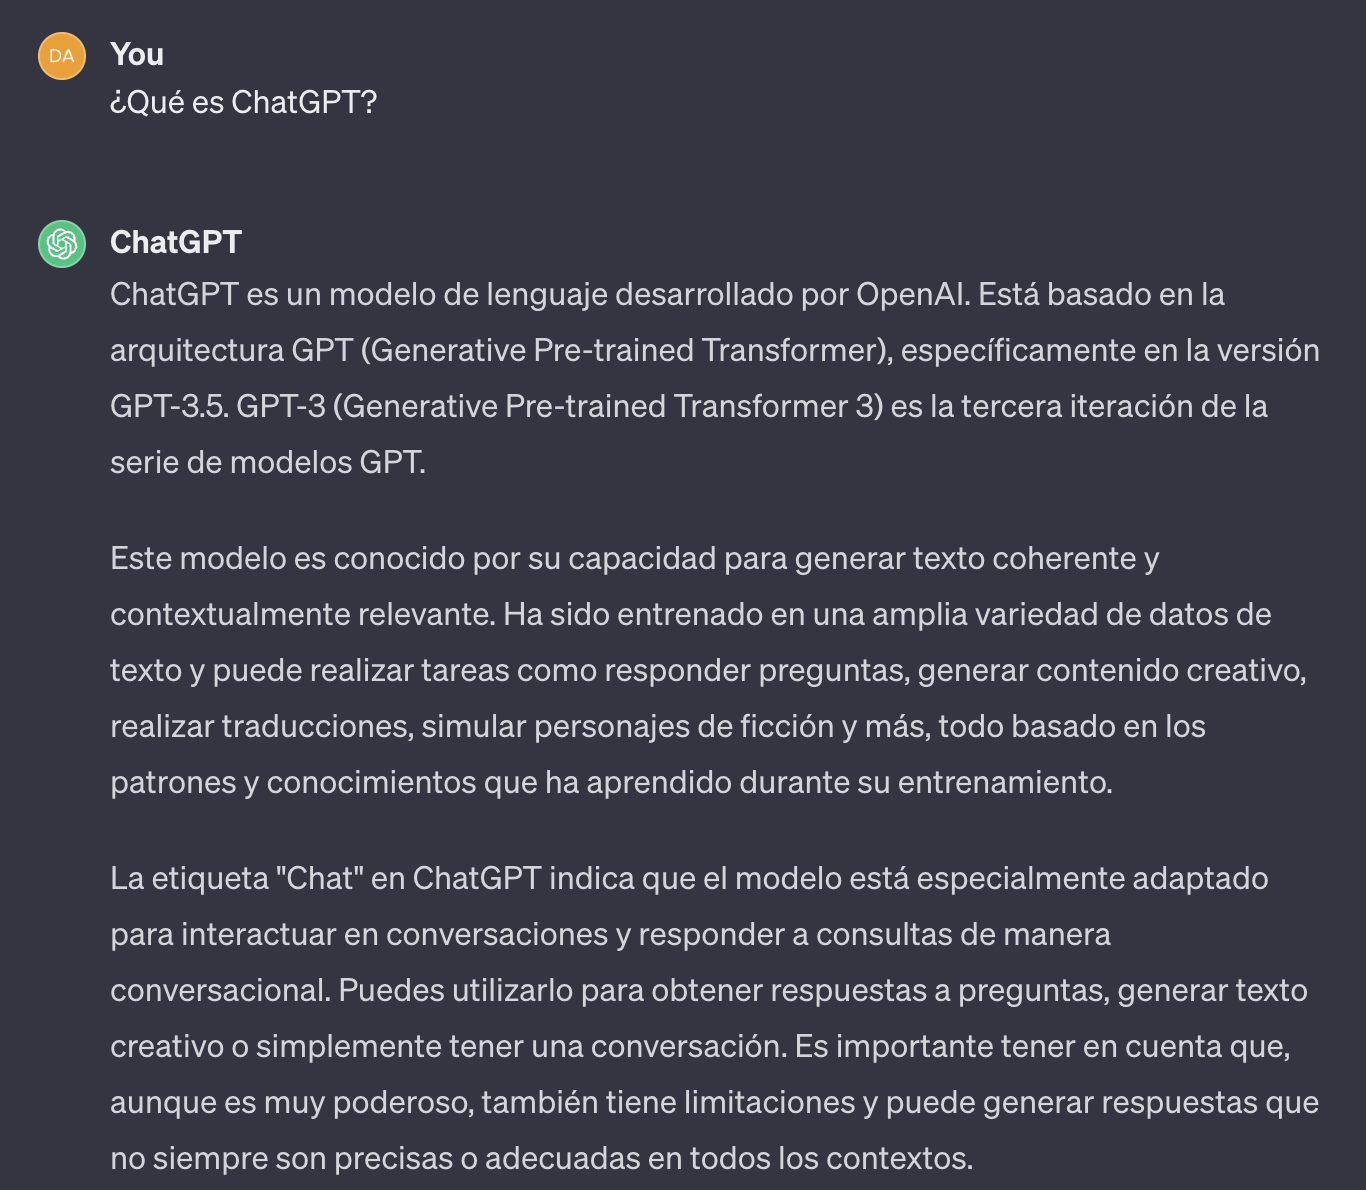 Captura de pantalla de ChatGPT respondiendo a la pregunta ��“¿Qué es ChatGPT?”.